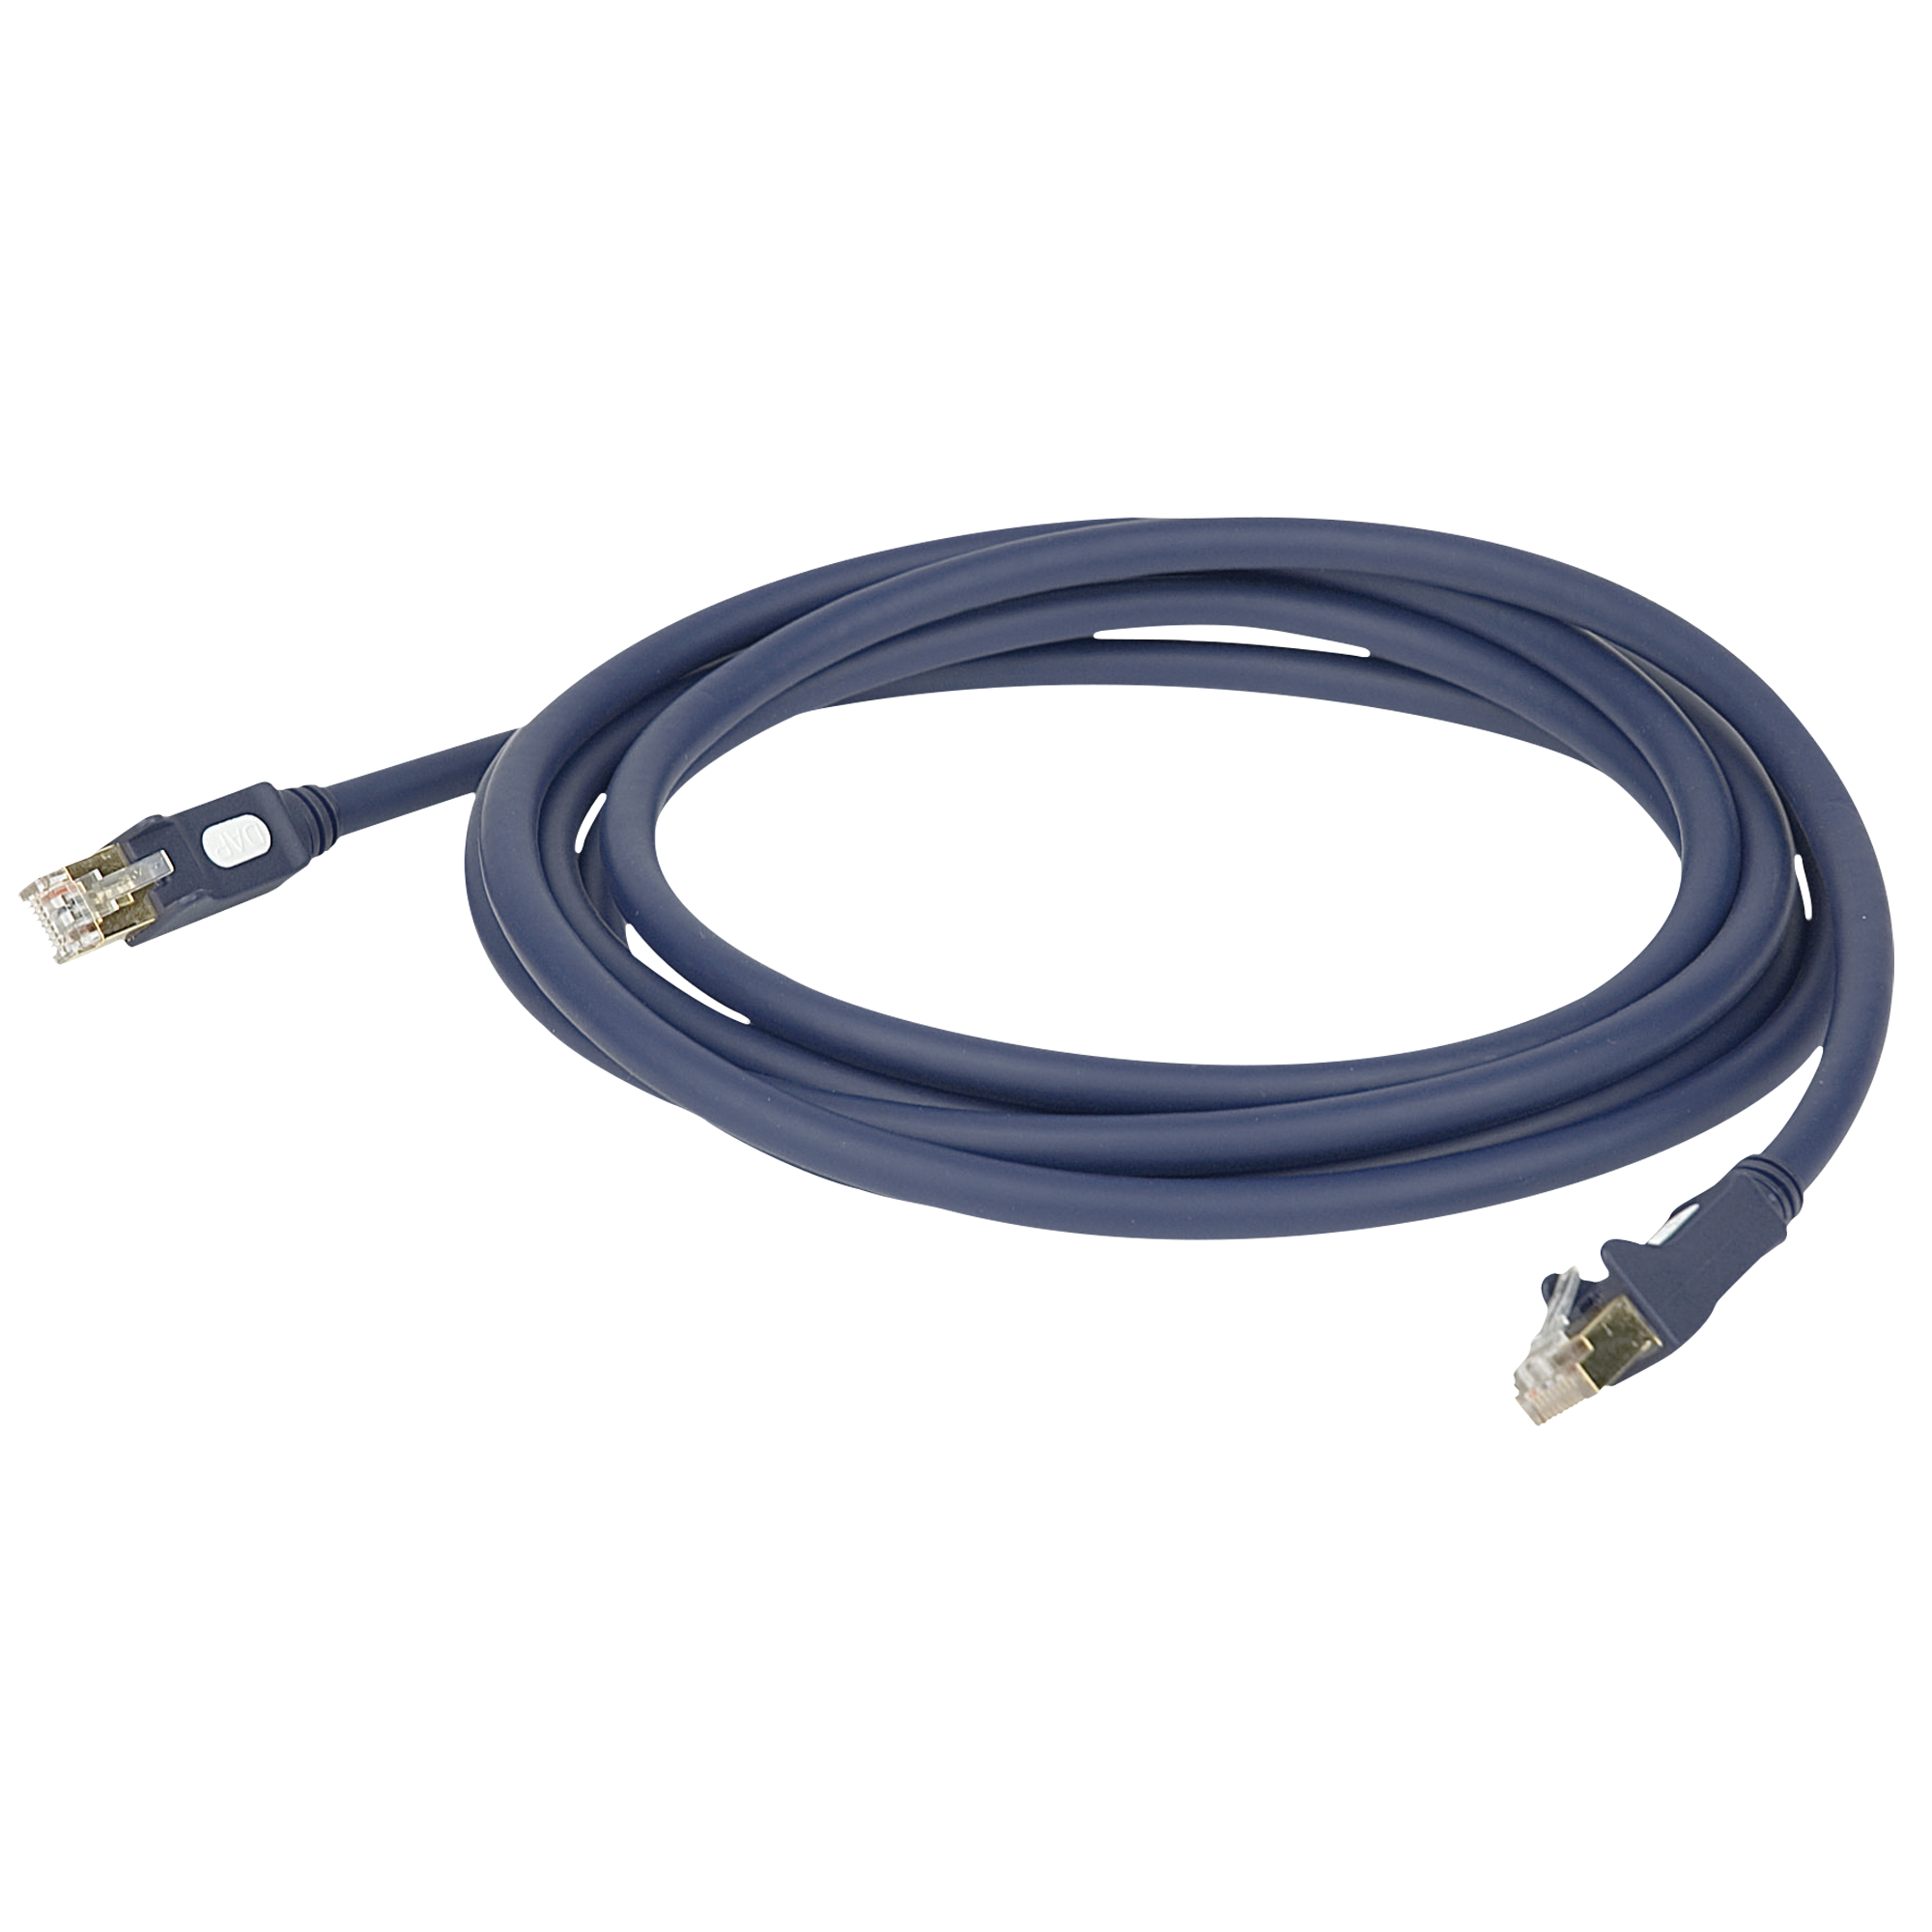 DAP FL56 - CAT6 Cable 15 m - Ethernet